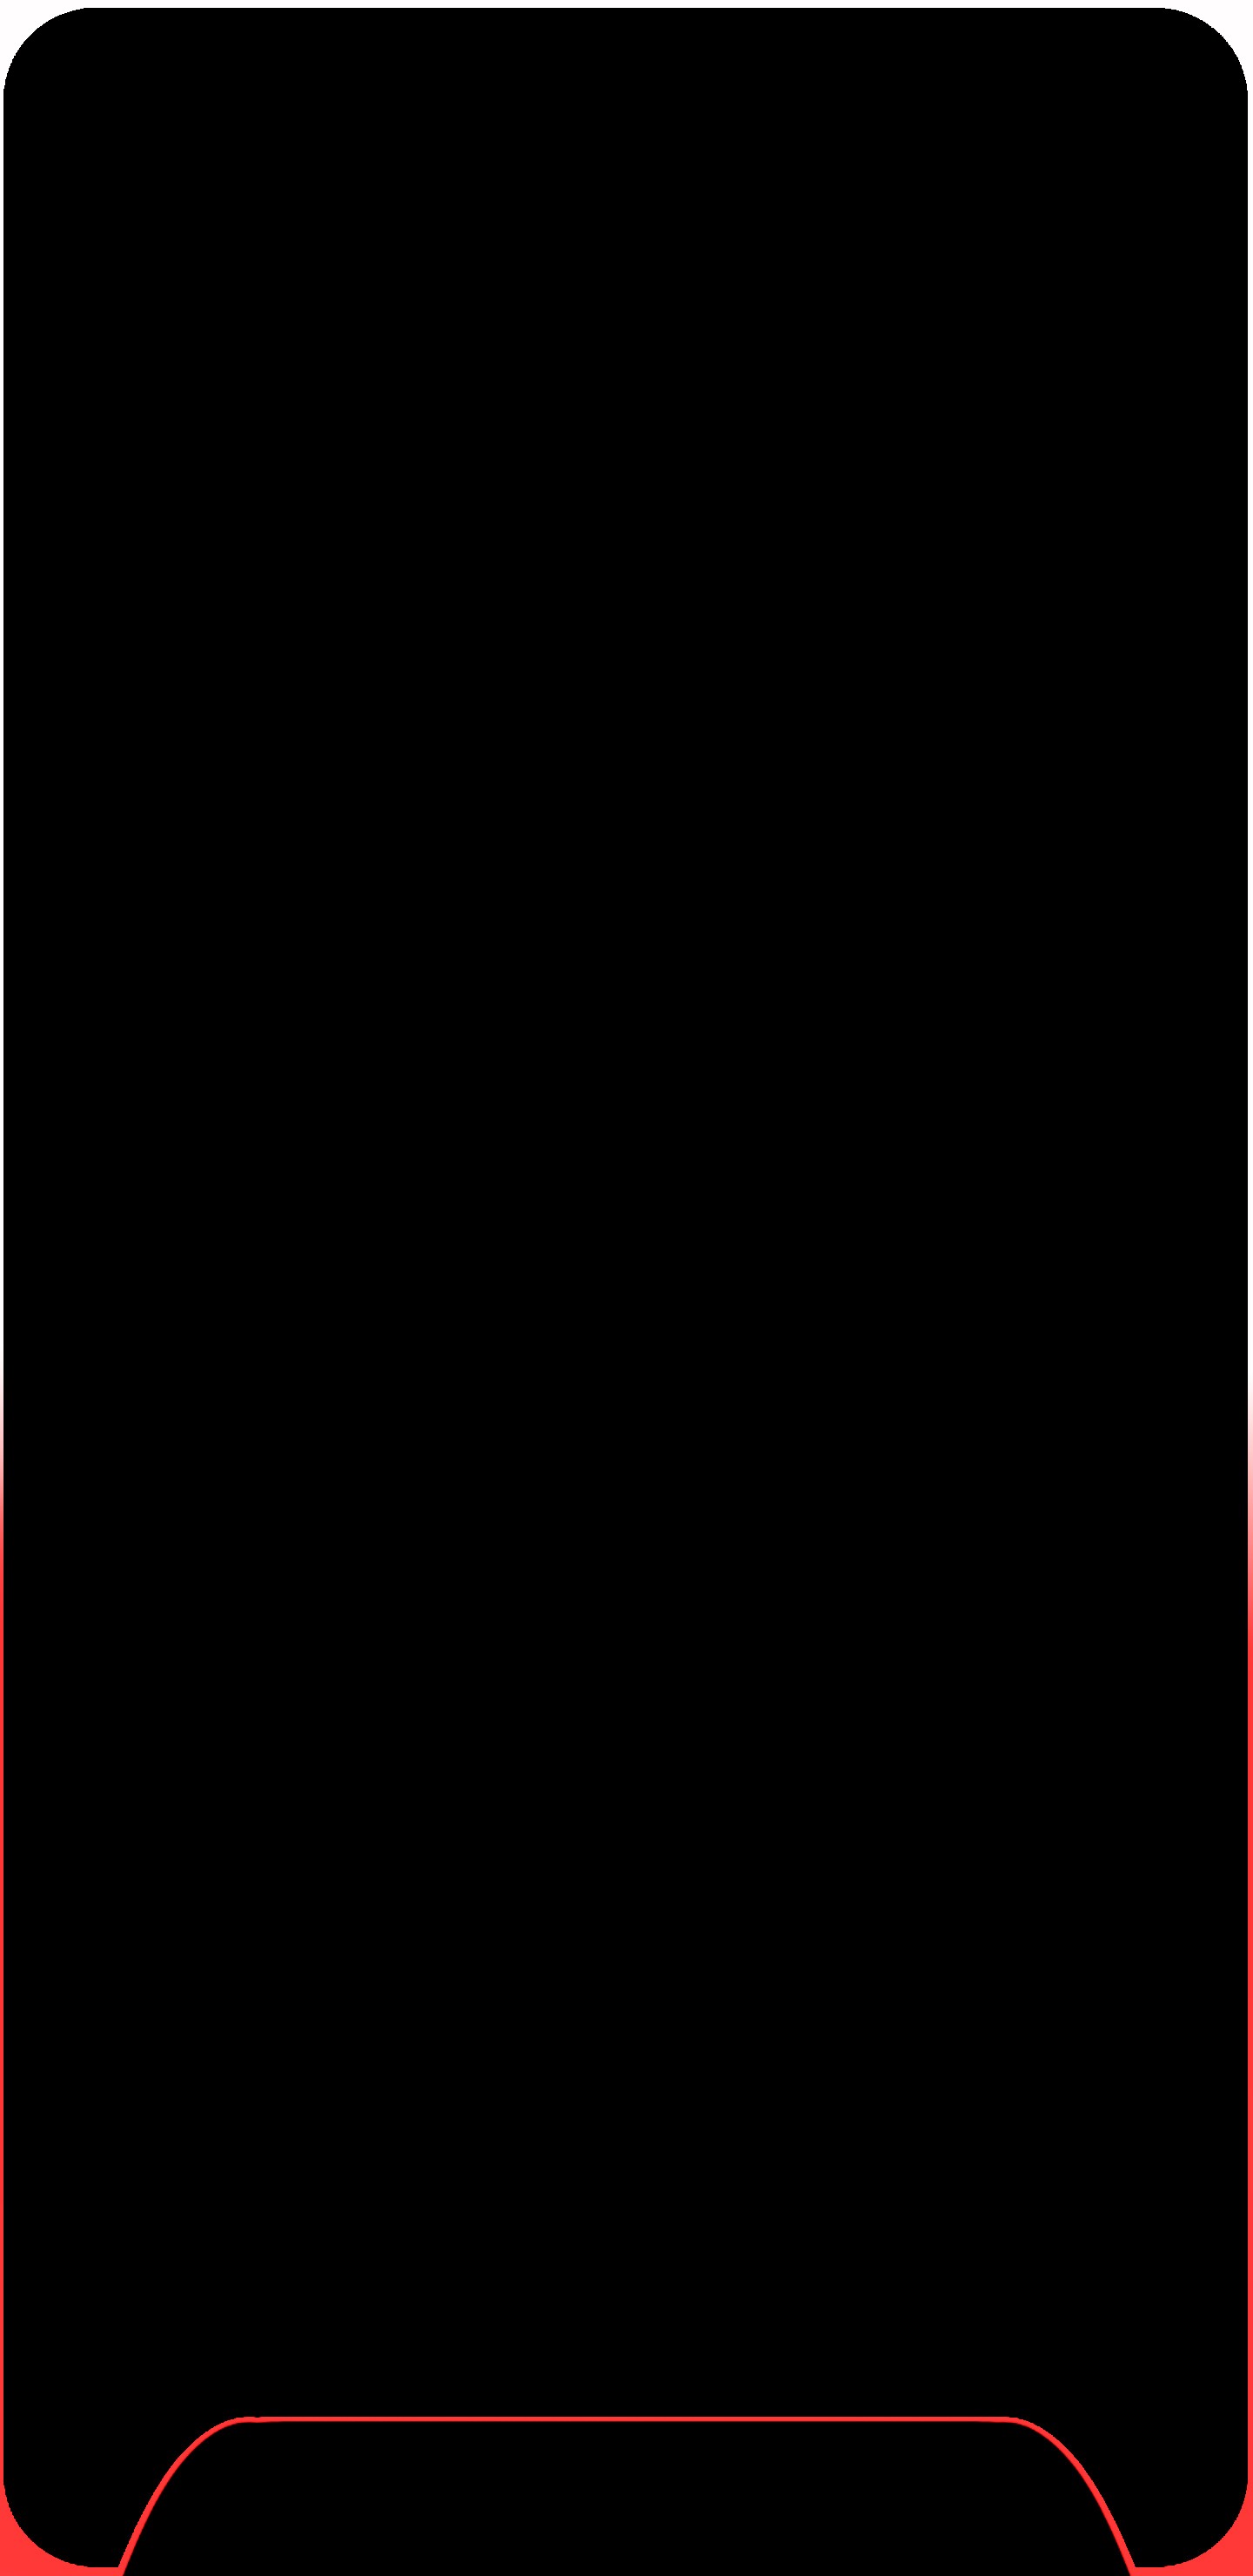 갤럭시 s8 벽지,검정,빨간,본문,갈색,어둠